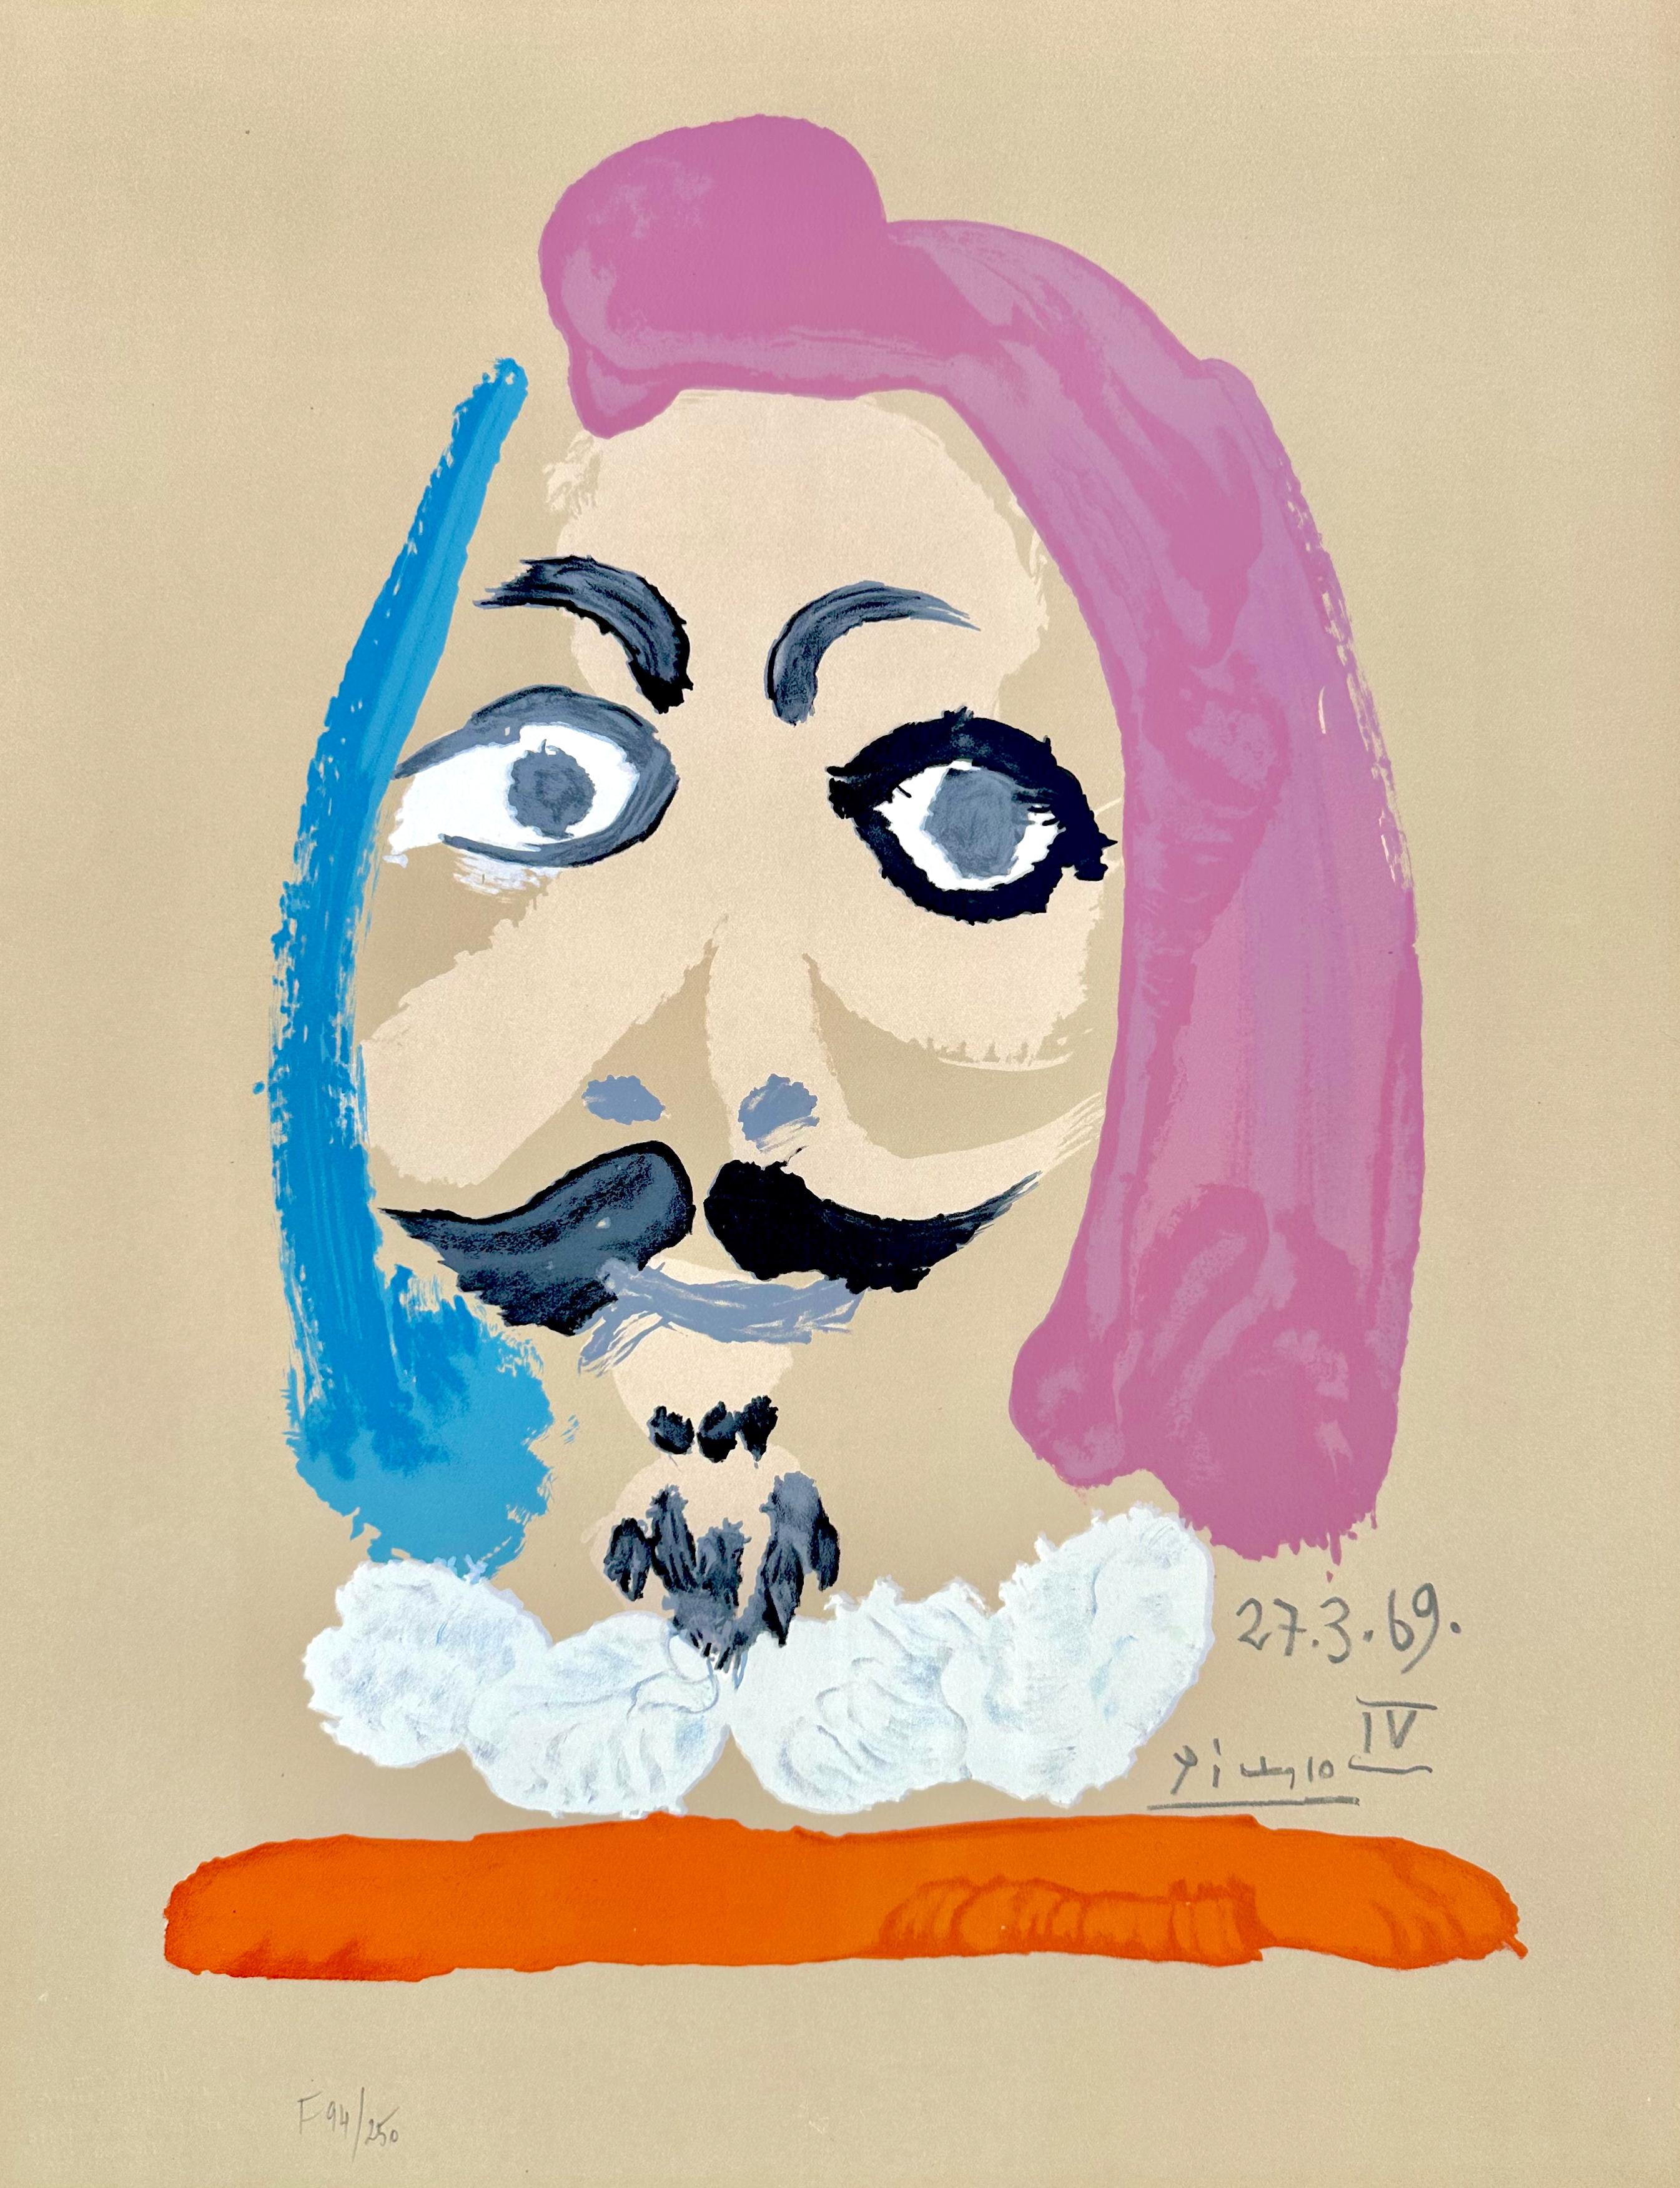 Pablo Picasso Figurative Print – Porträts Imaginaires 27.3.69 IV